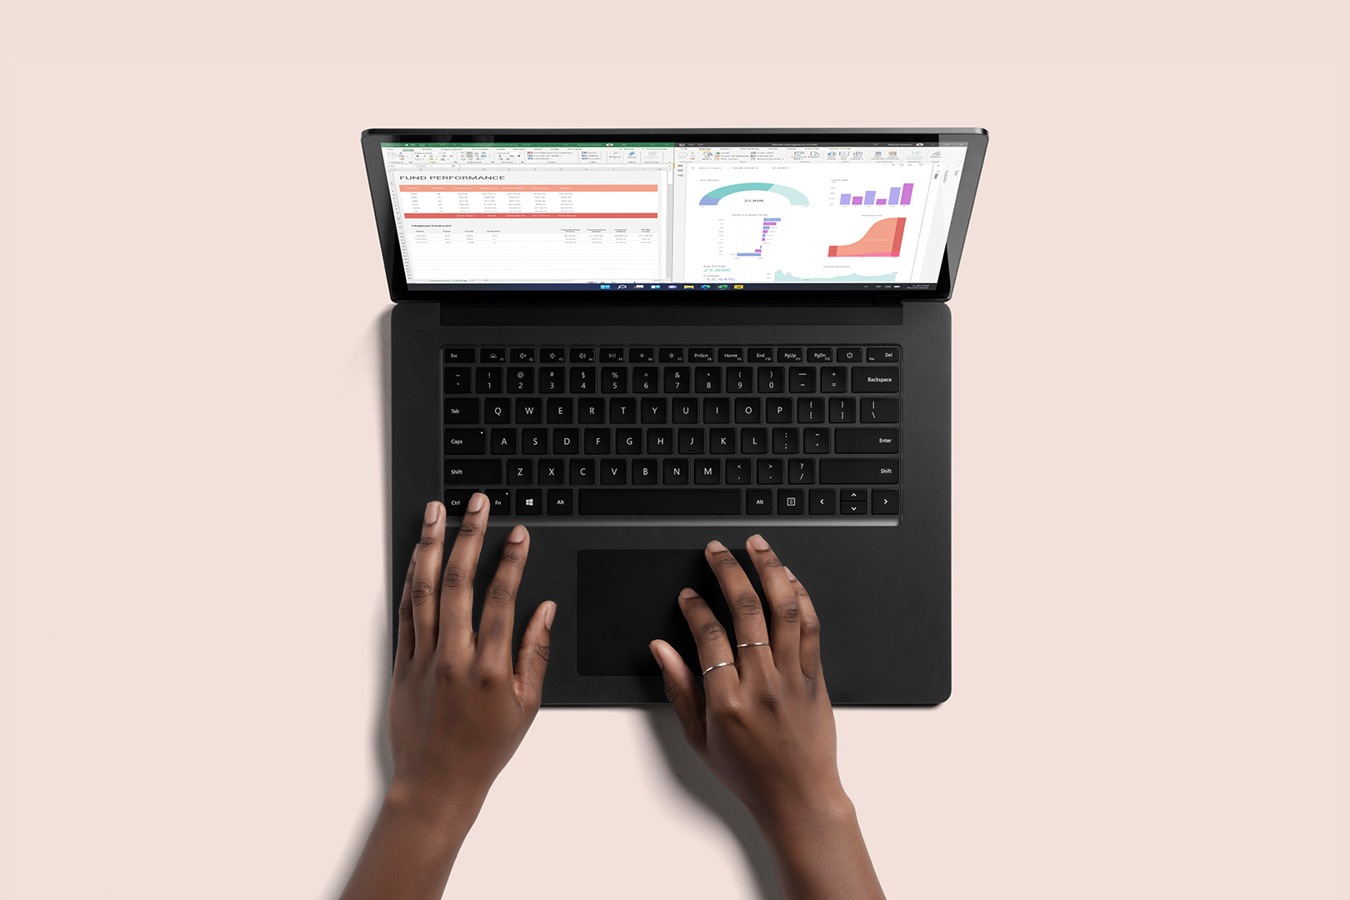 Bovenaanzicht van de zwarte Surface Laptop 4, met twee handen die typen op het toetsenbord
